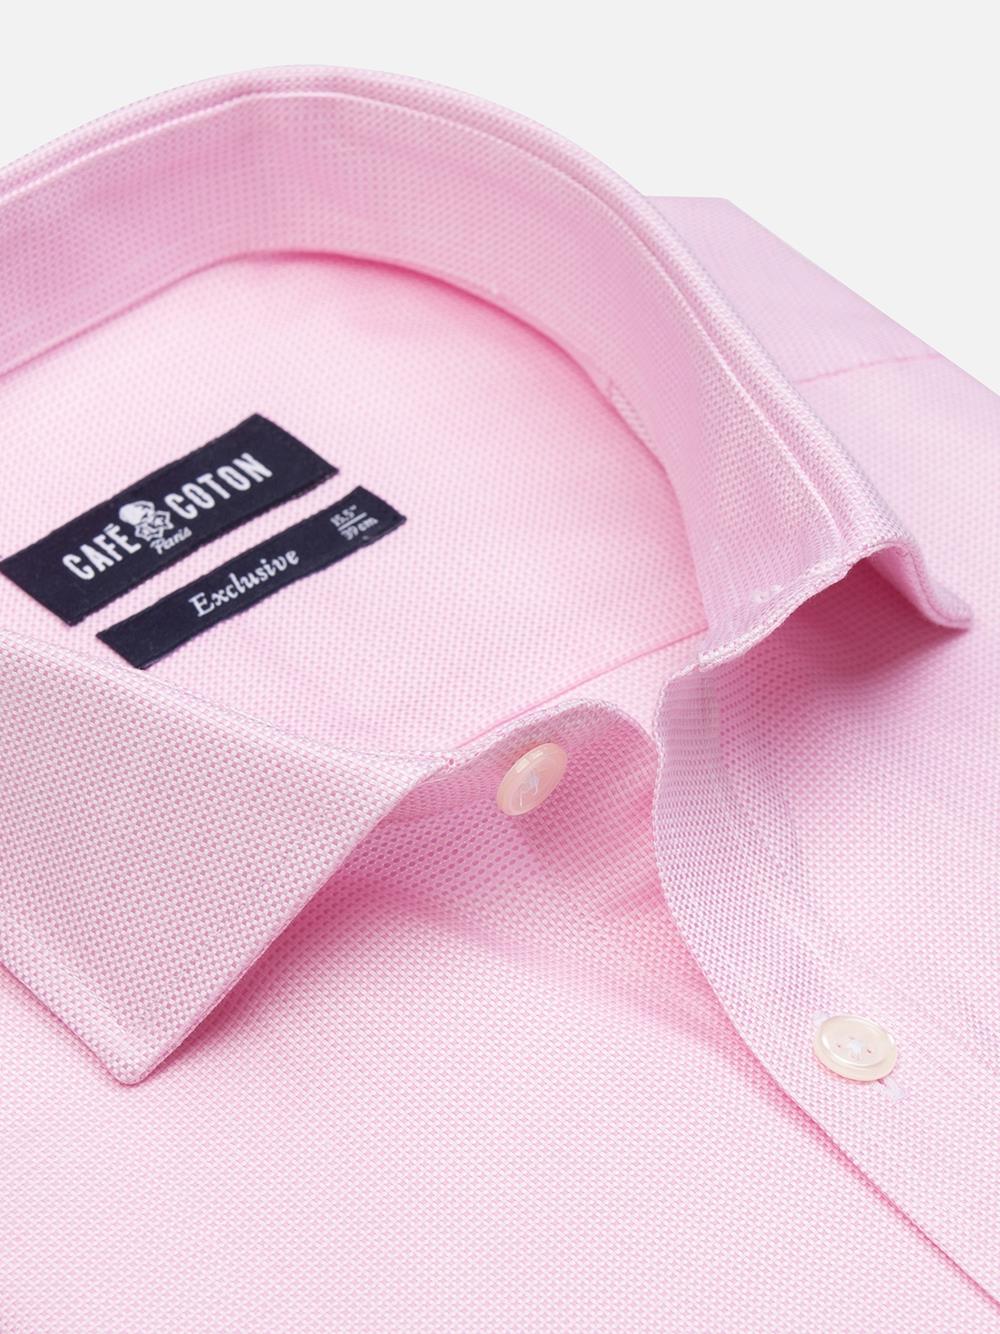 Camisa slim fit de natte rosa - Mangas extralargas